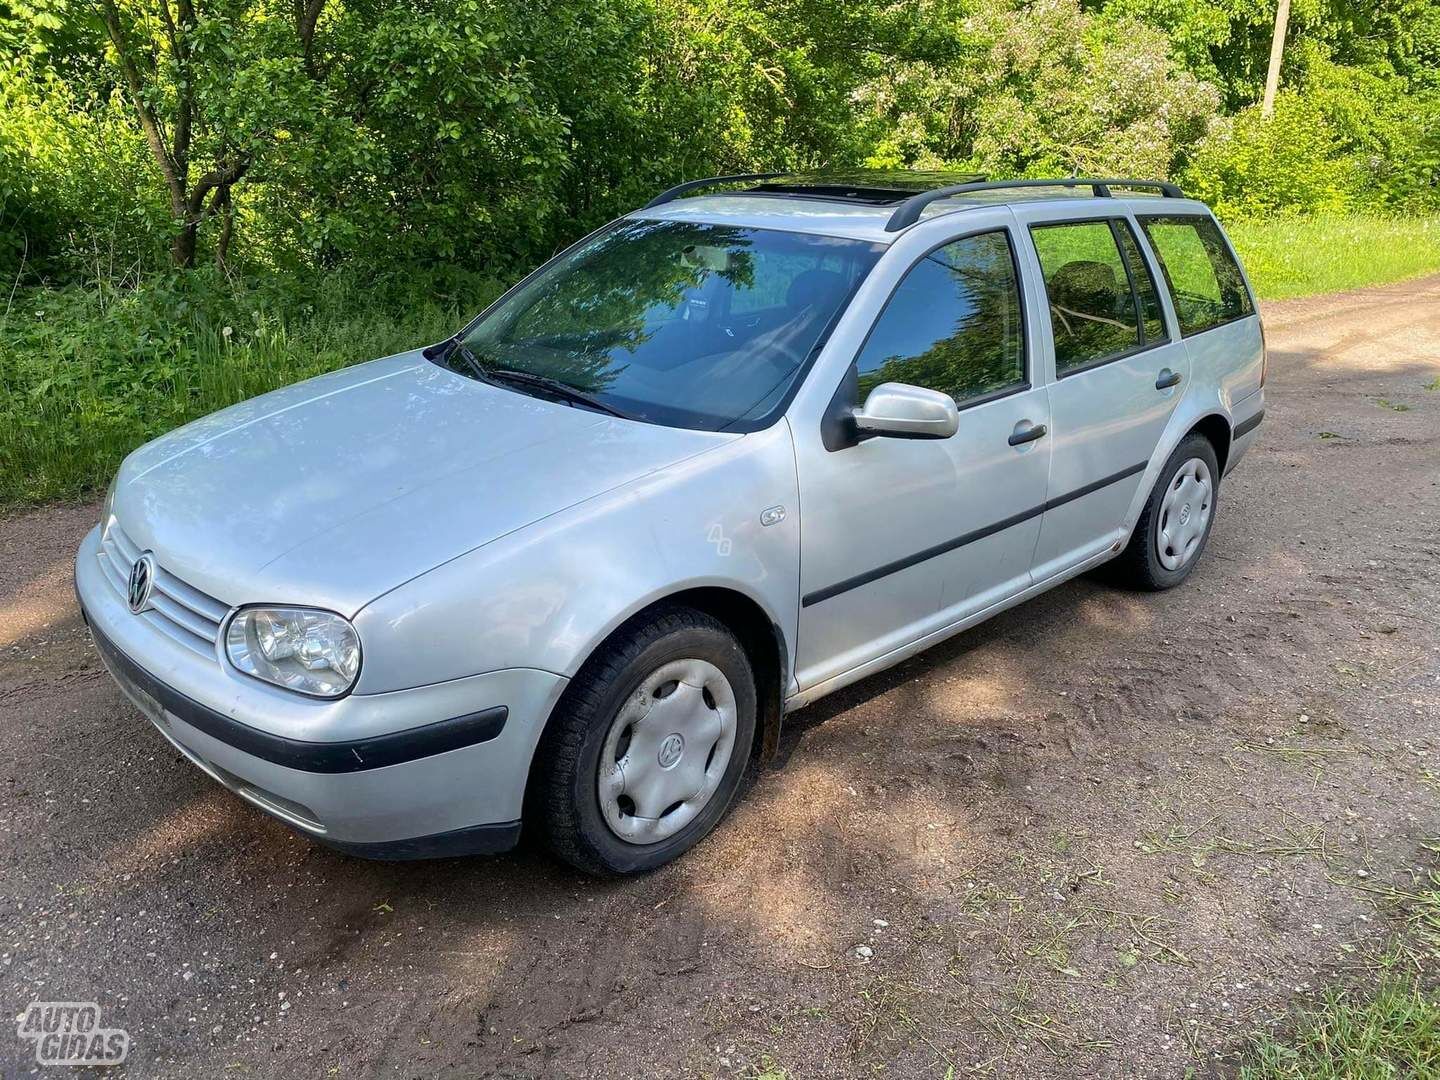 Volkswagen Golf 2000 г запчясти